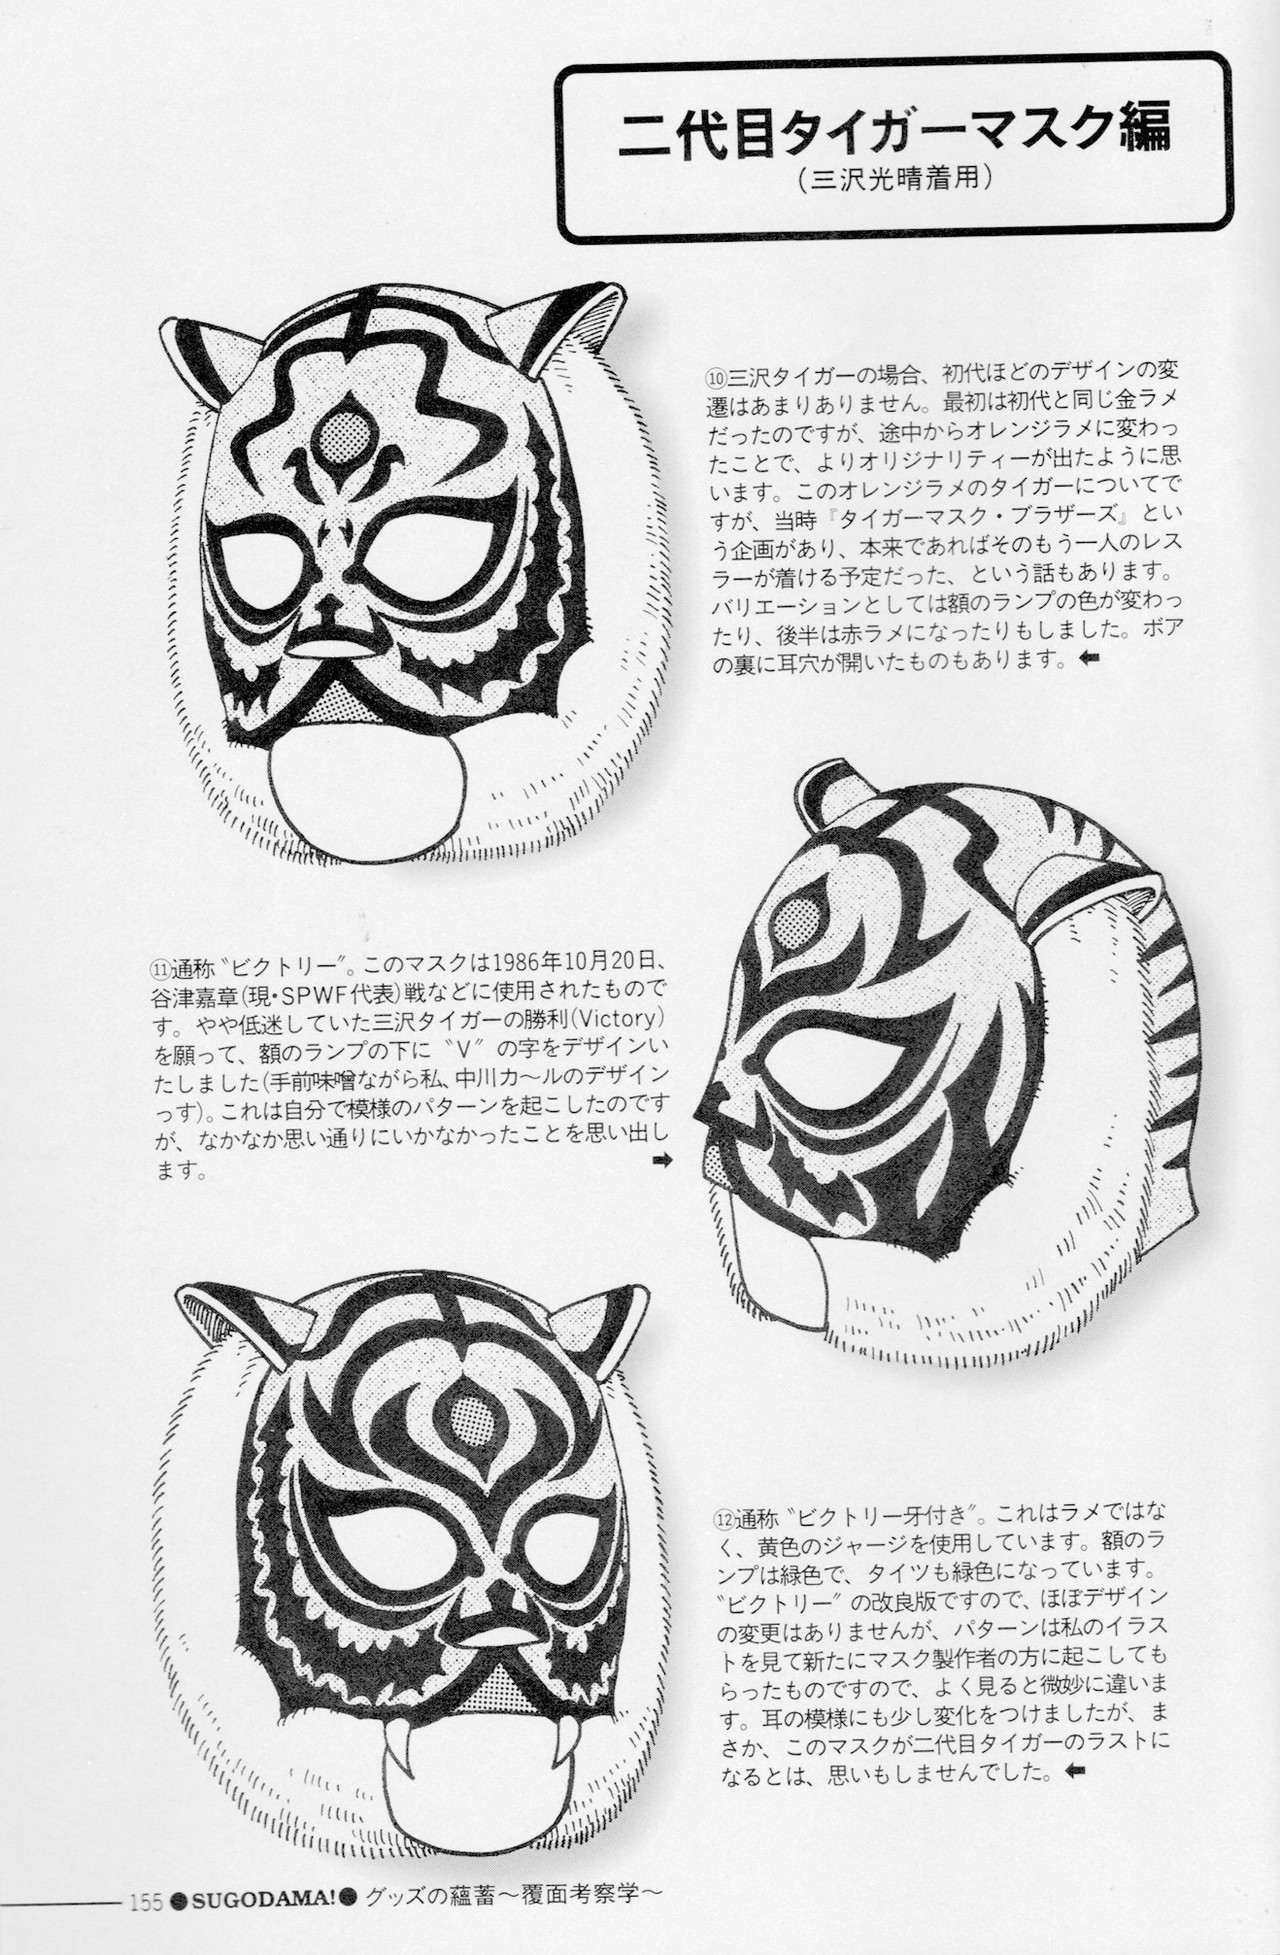 ２代目タイガーマスクのデザイン変遷 中川カ ル Note